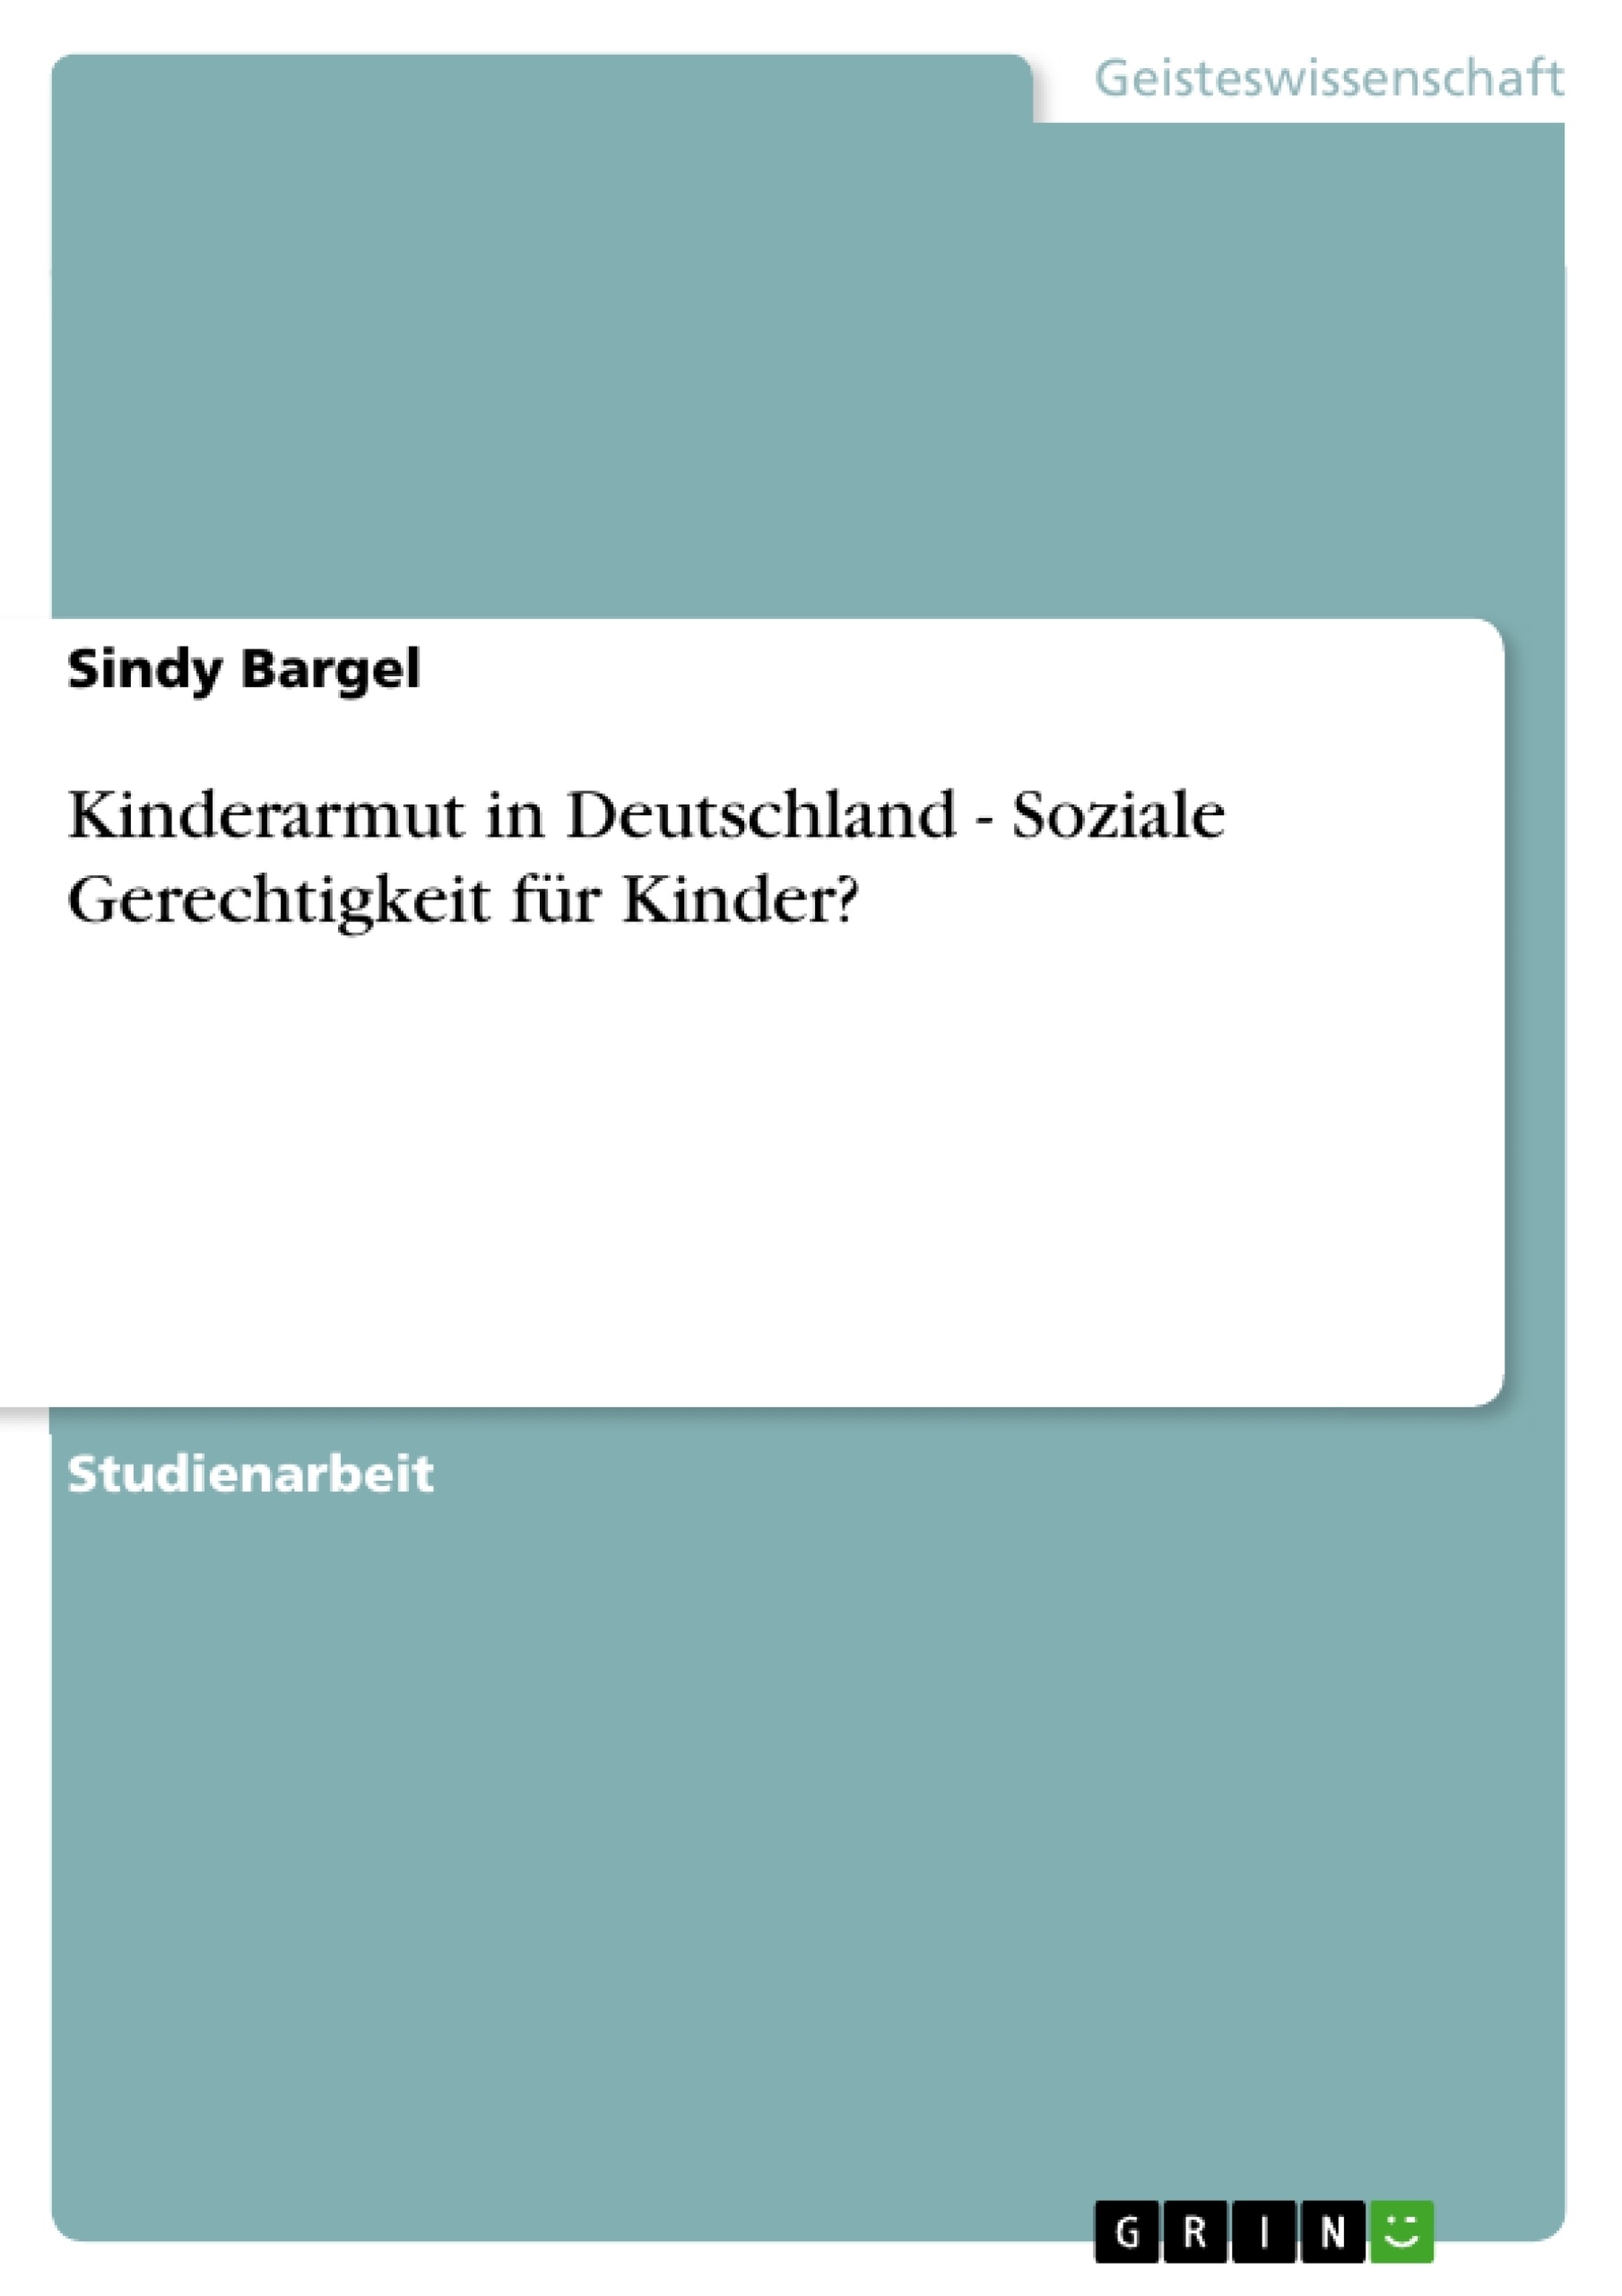 Title: Kinderarmut in Deutschland - Soziale Gerechtigkeit für Kinder?